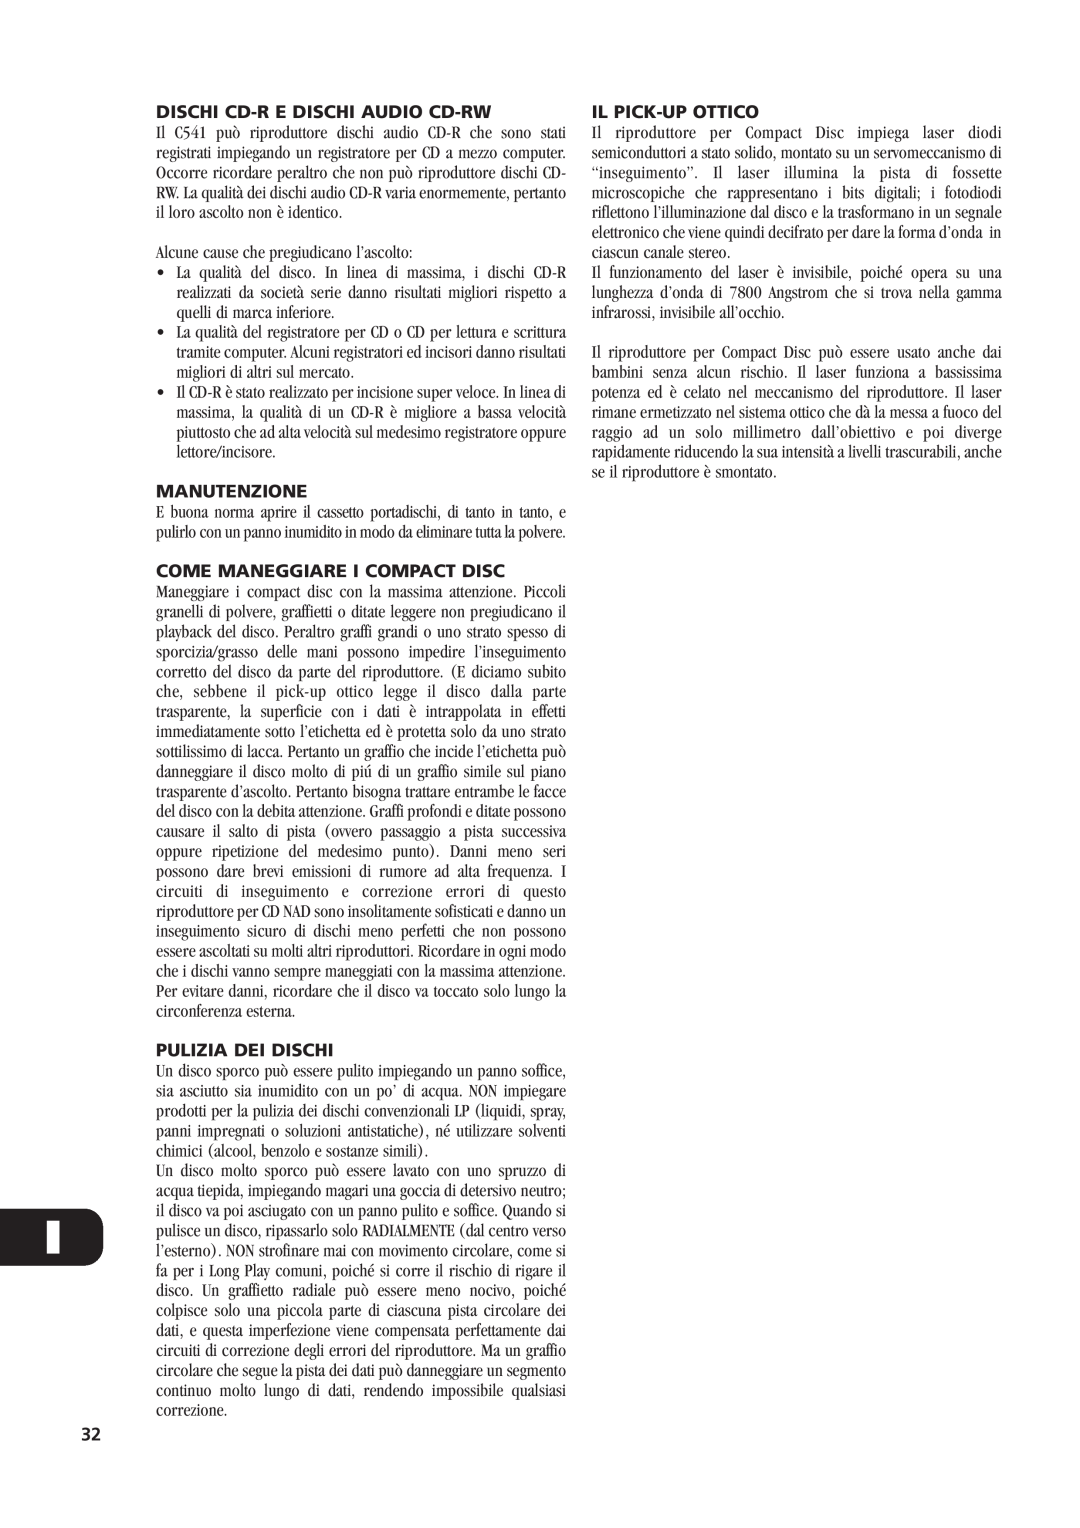 NAD C541 owner manual Dischi Cd-Re Dischi Audio Cd-Rw, Manutenzione, Pulizia Dei Dischi, Il Pick-Upottico 